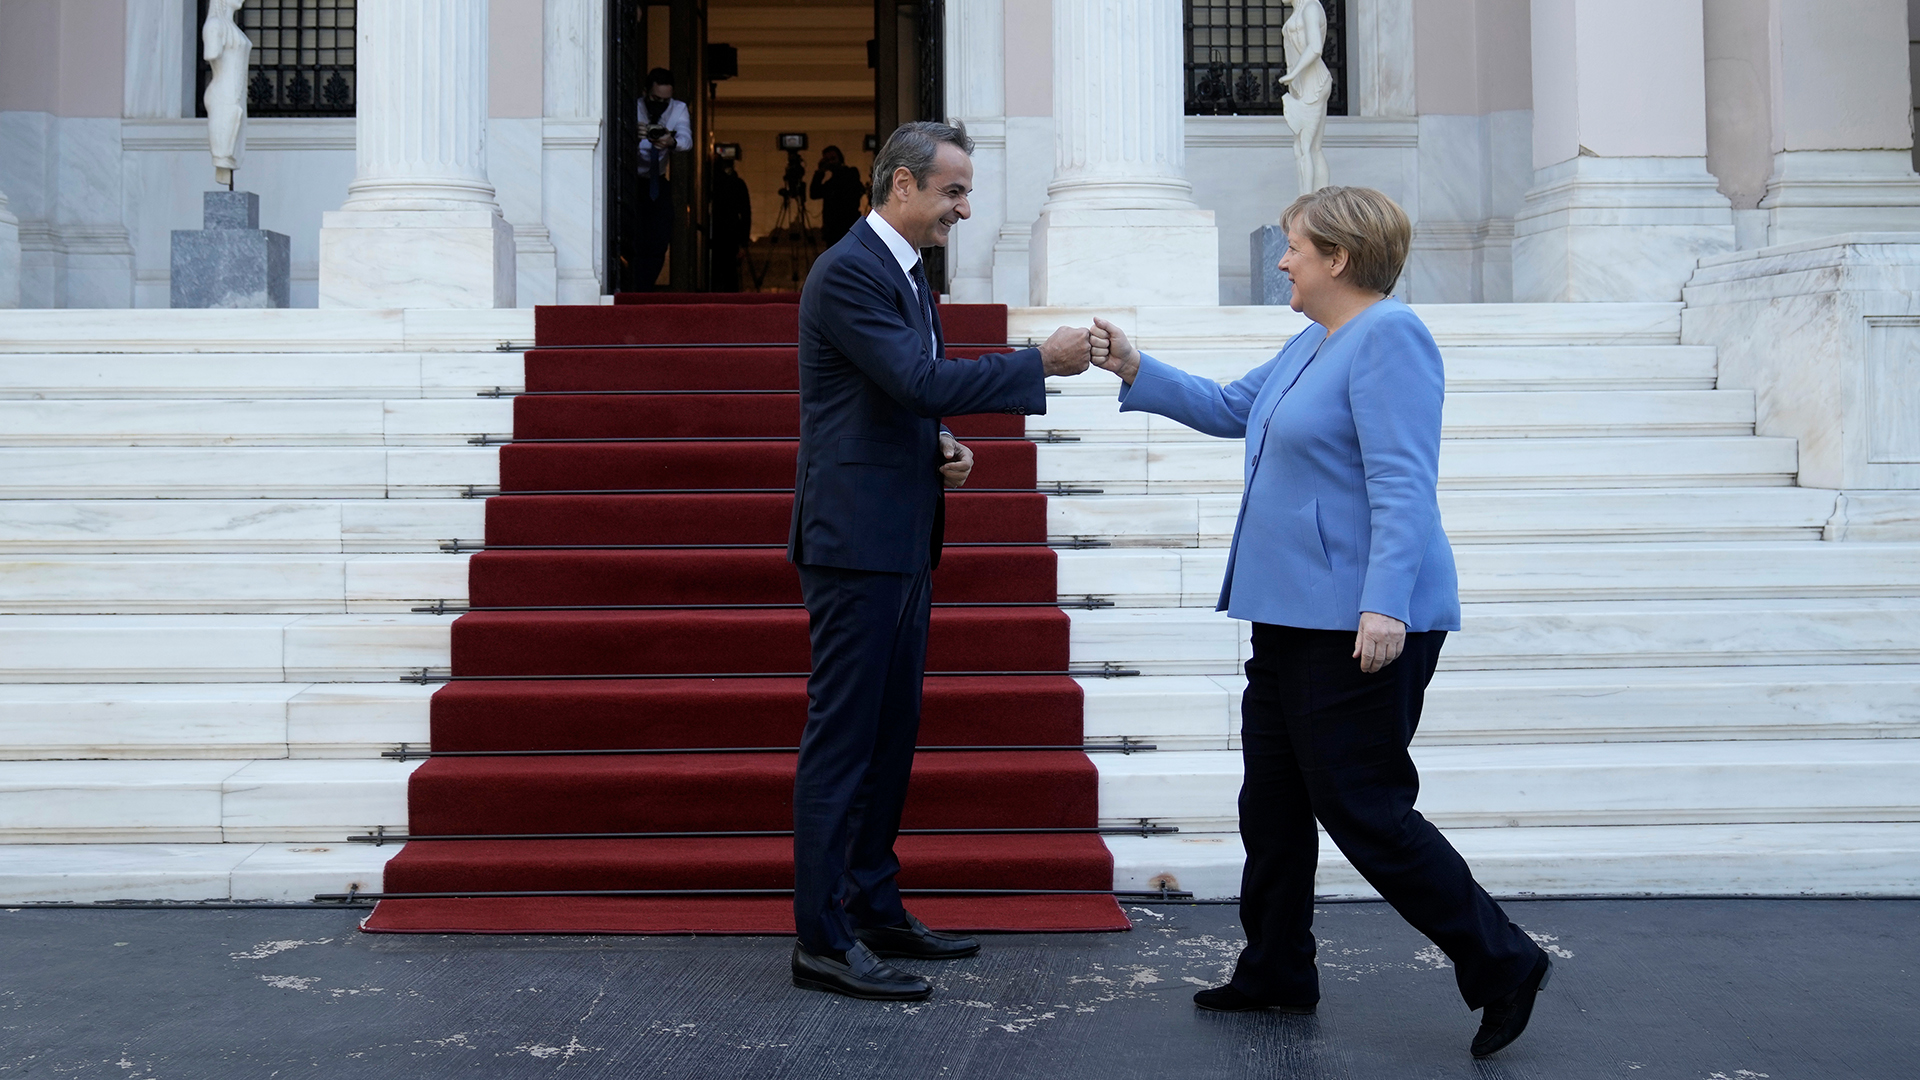 Kyriakos Mitsotakis, Premierminsiter von Griechenland, begrüßt die geschäftsführende Bundeskanzlerin Angela Merkel.